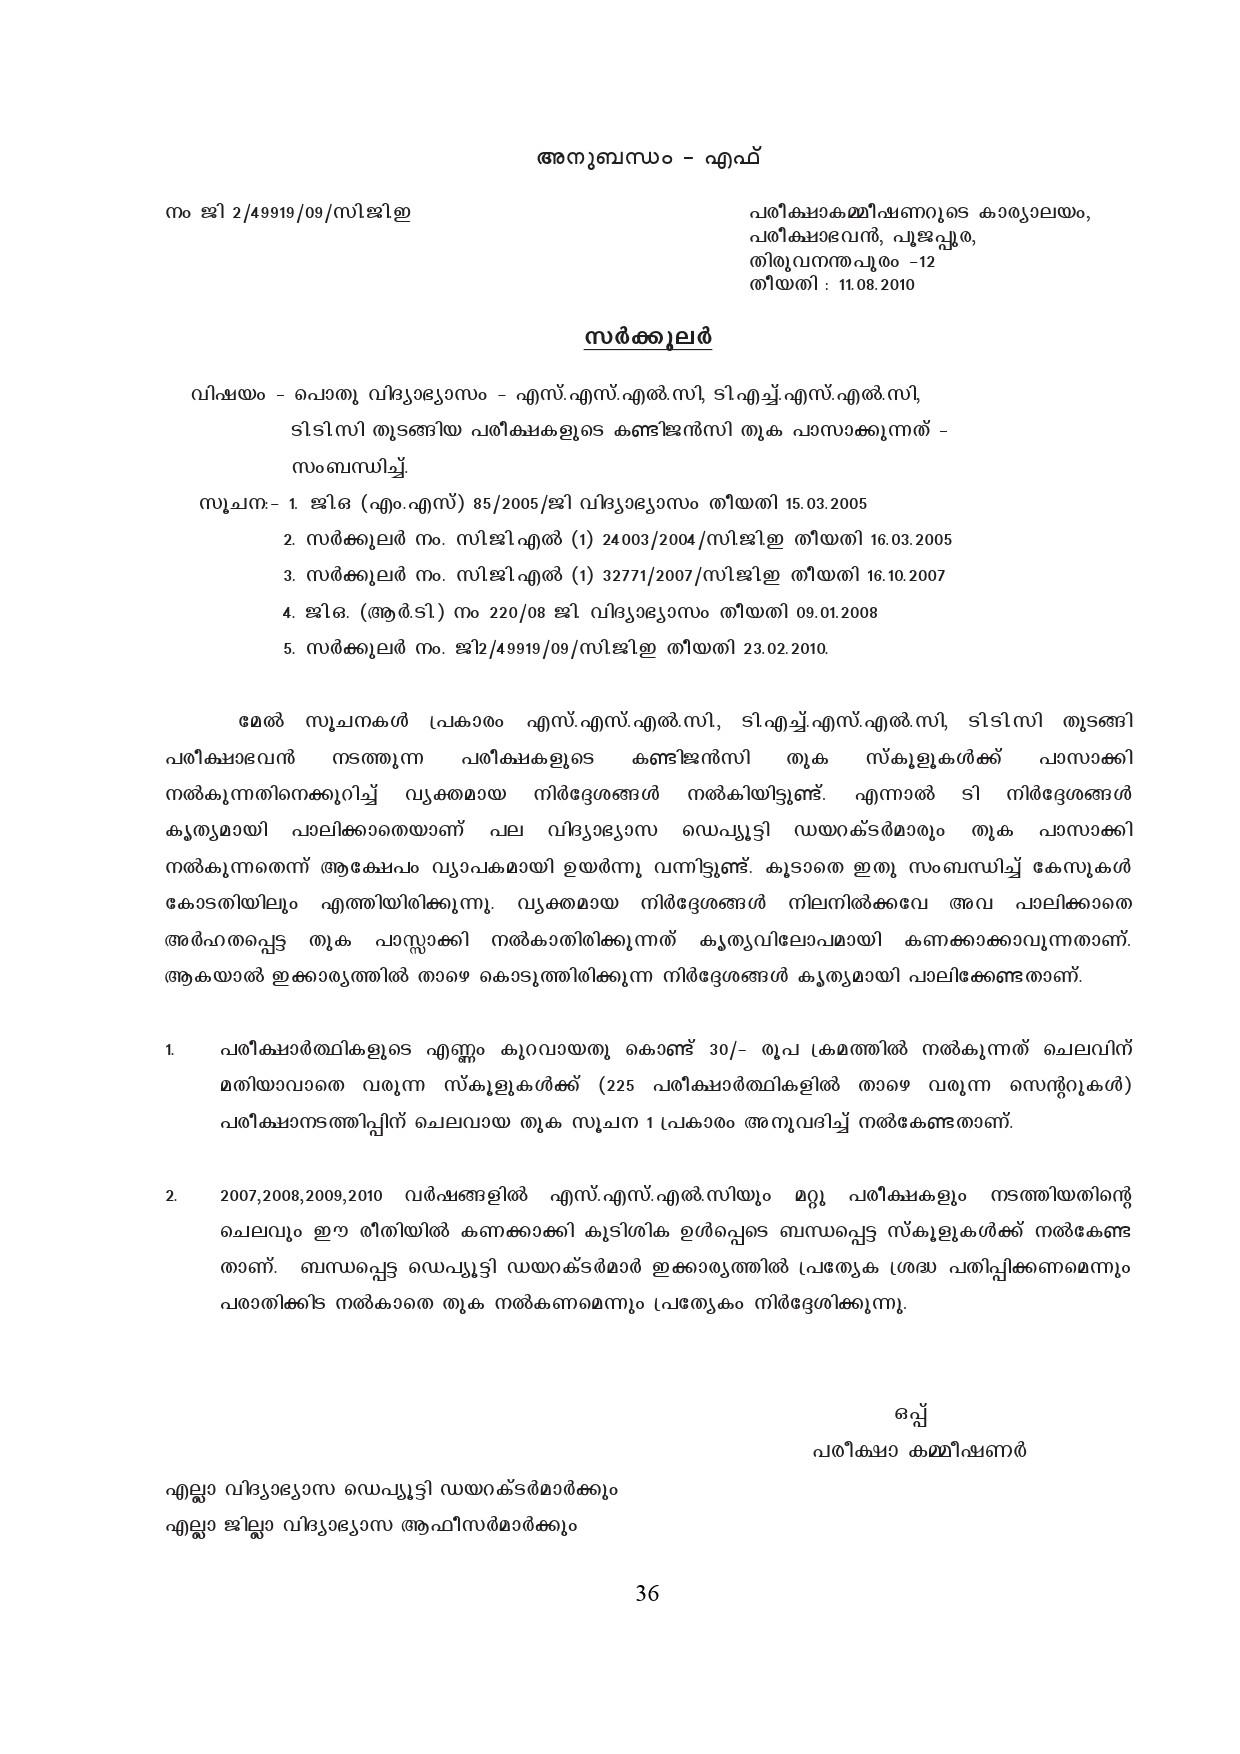 Kerala SSLC Exam Result 2019 - Notification Image 36